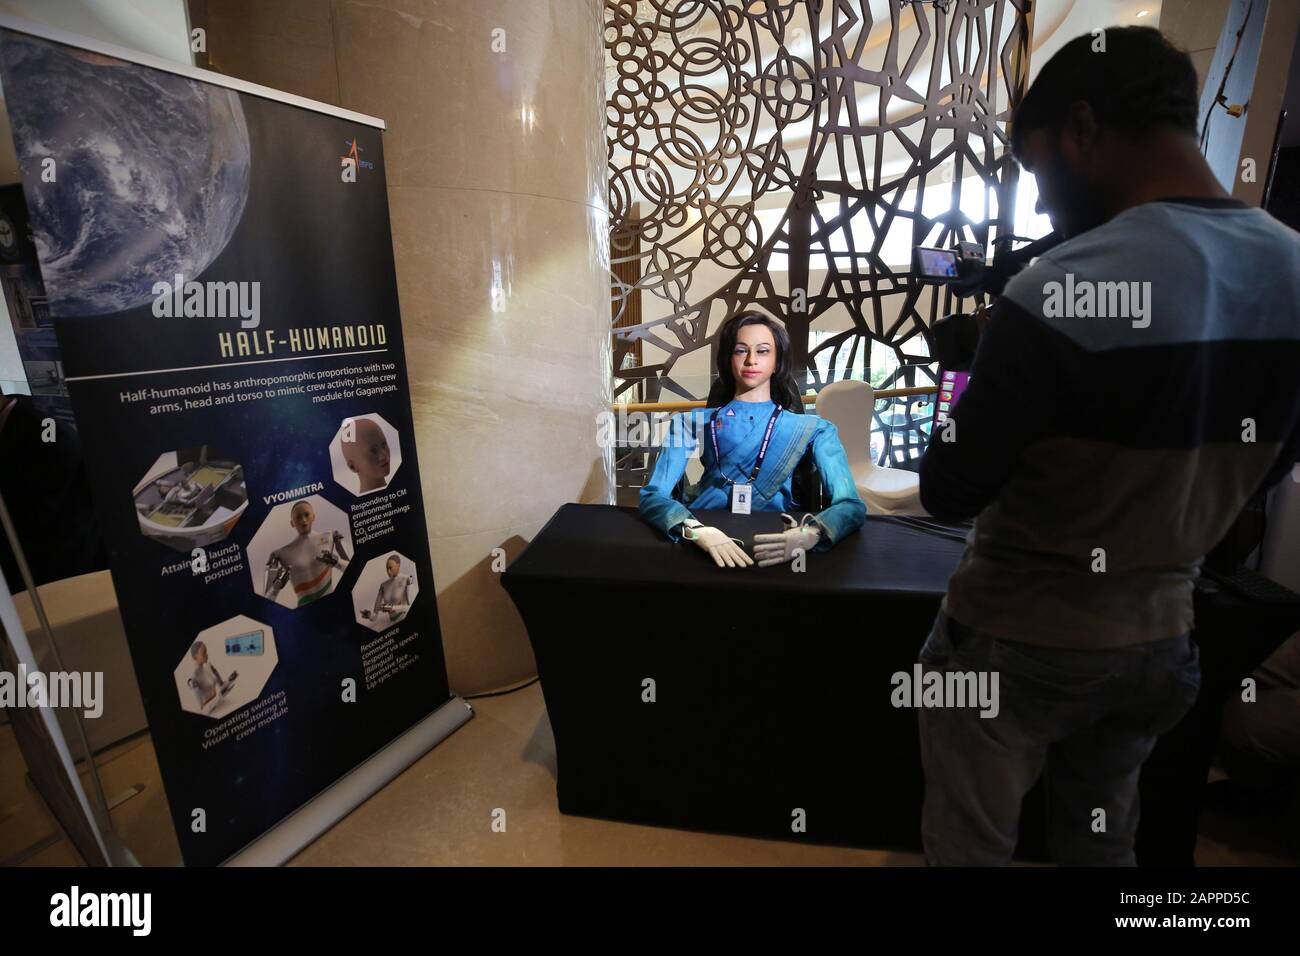 (200124) -- BANGALORE, le 24 janvier 2020 (Xinhua) -- Vyom Mitra, un demi-humanoïde développé par l'Organisation indienne de recherche spatiale (ISRO), est présenté au symposium « Human SpaceFlight and exploration », à Bangalore, en Inde, le 23 janvier 2020. (Str/Xinhua) Banque D'Images